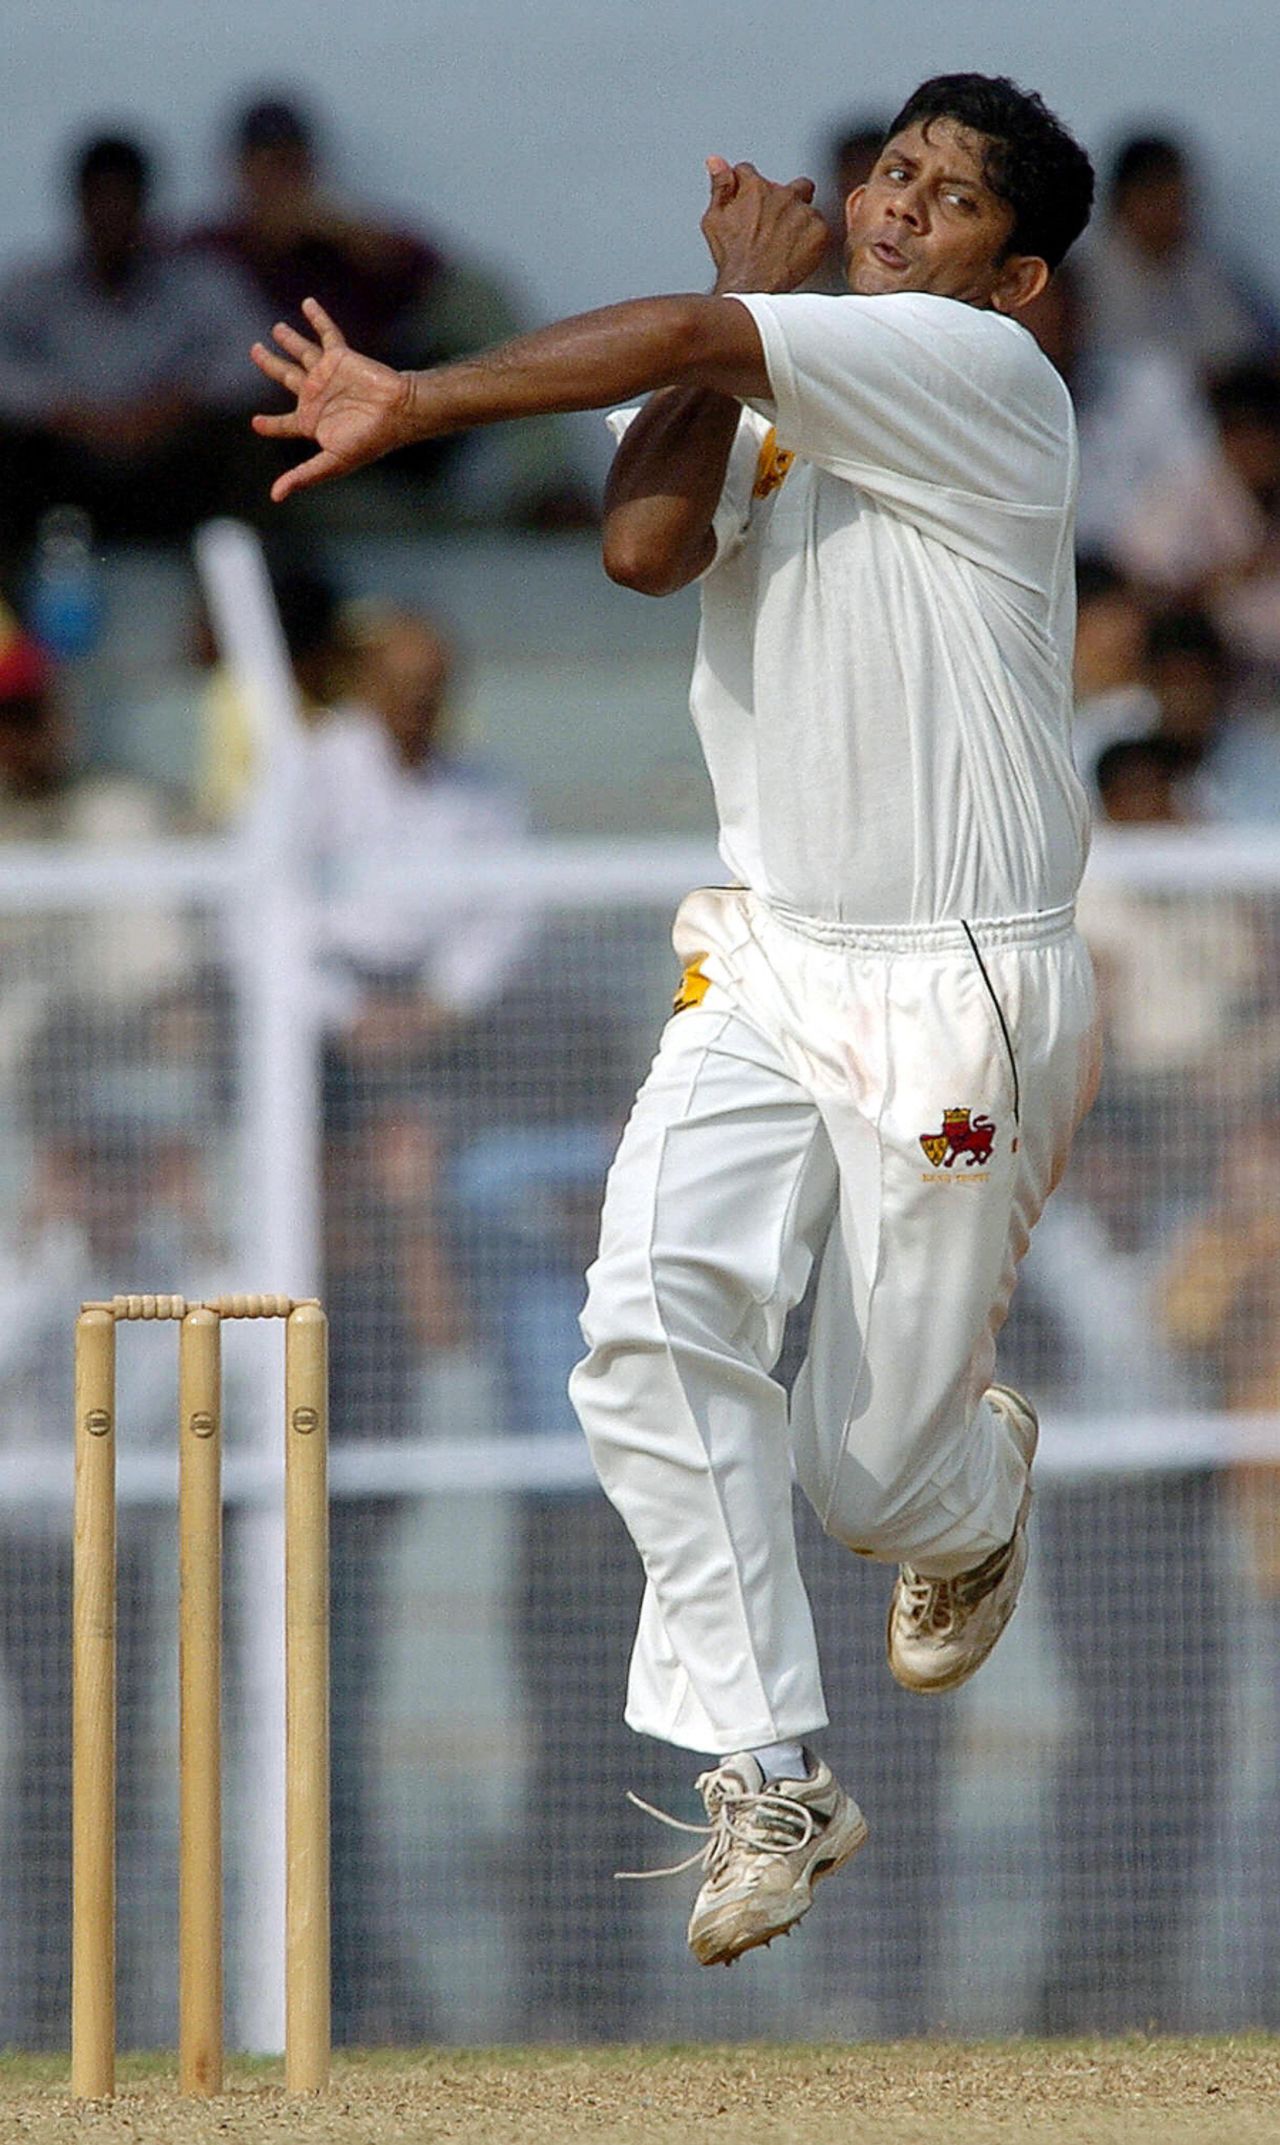 Sairaj Bahutule bowling against the Australians, September 30, 2004